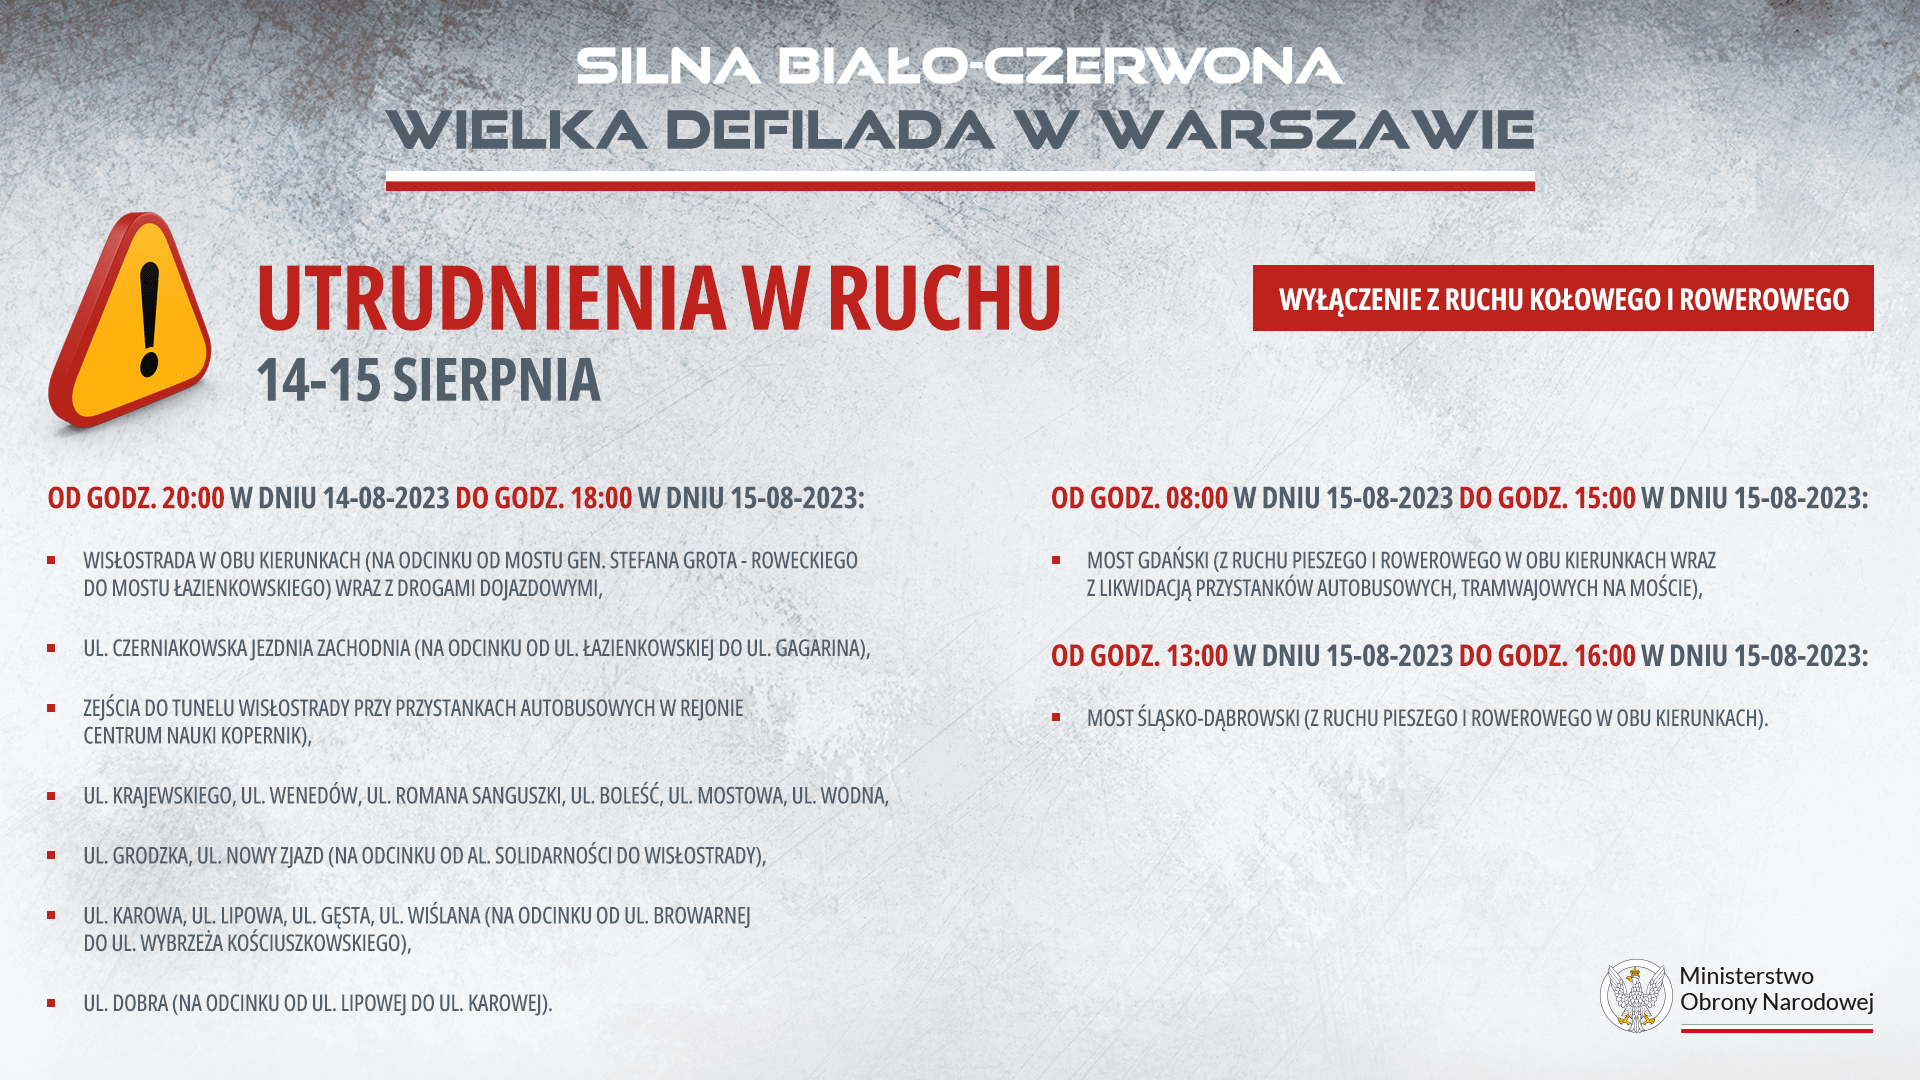 Wielka defilada Wojska Polskiego - utrudnienia komunikacyjne 14-15 sierpnia